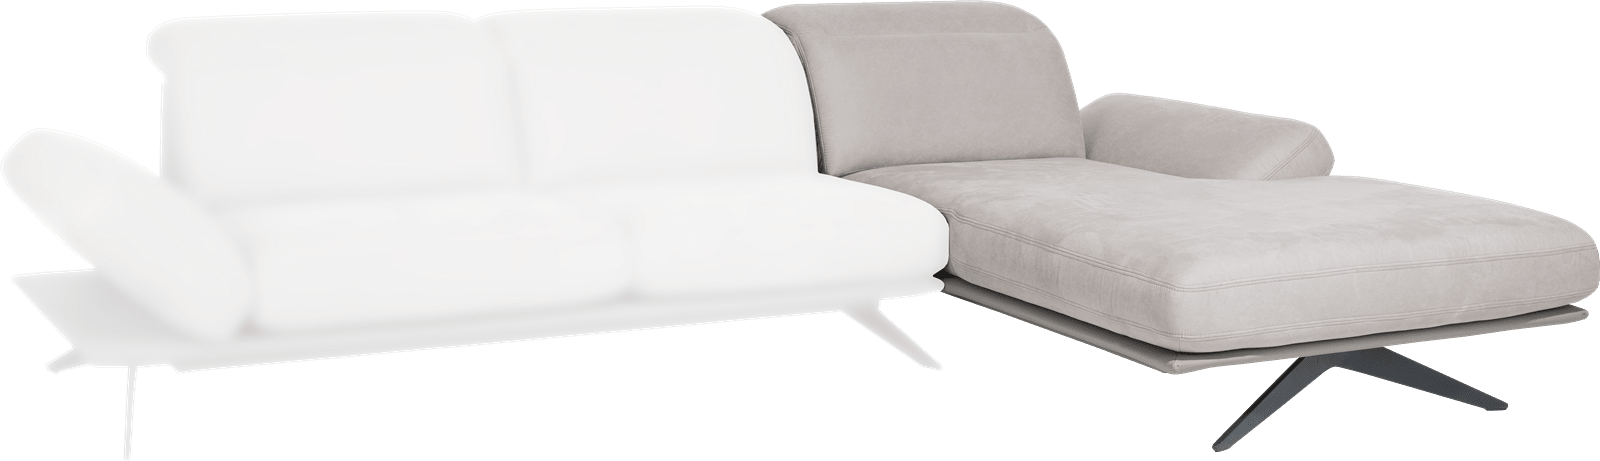 XOOON - Paxos - Minimalistisches Design - Sofas - Longchair rechts